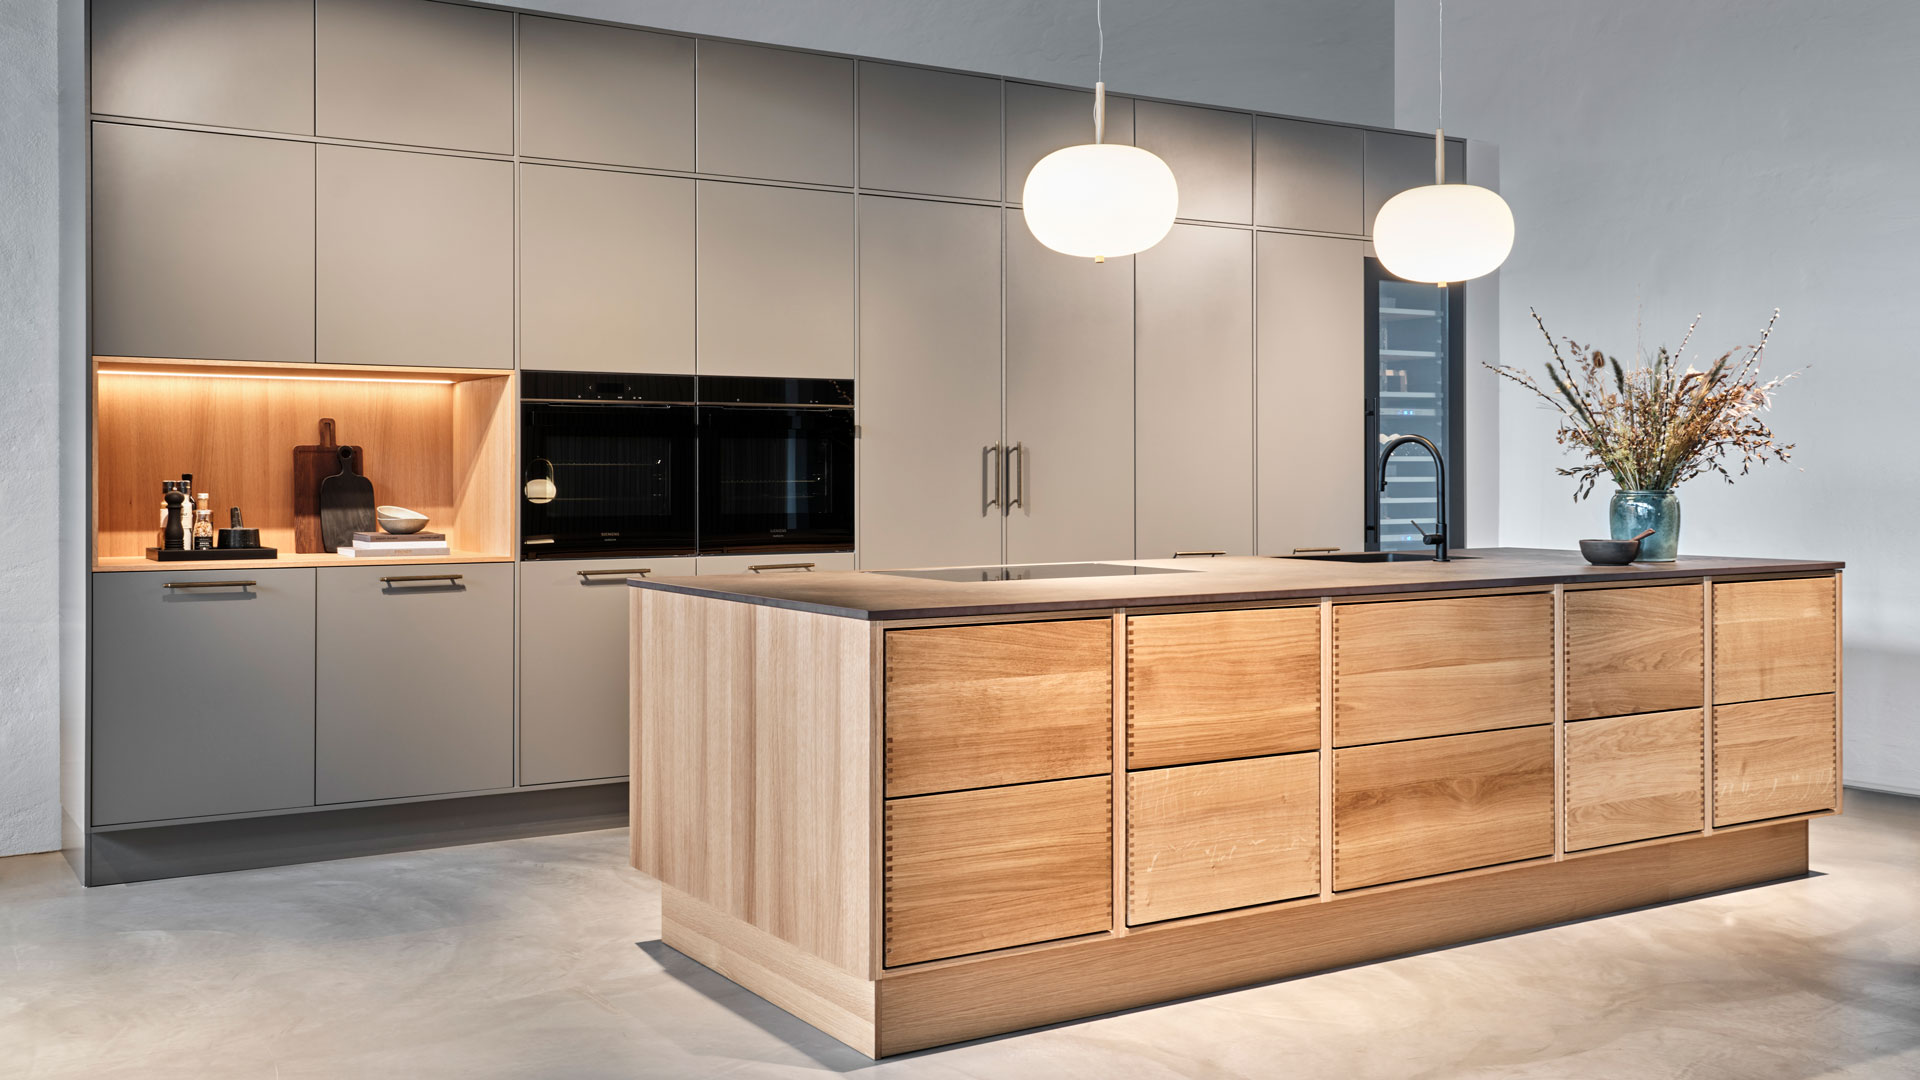 Tvis Køkken Skive - køkkenfirma med nye køkkener, badeværelser og garderobeskabe